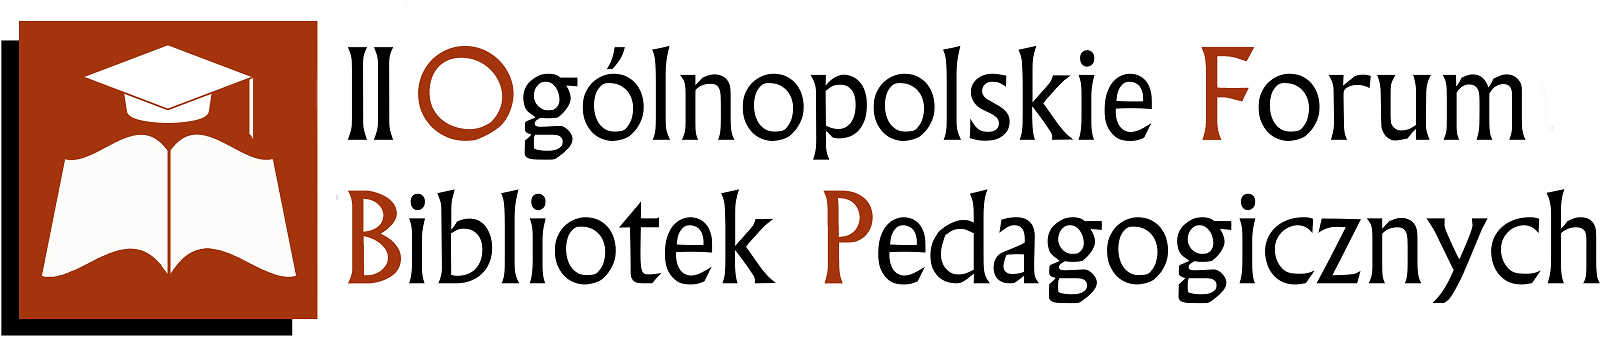 II Ogólnopolskie Forum Bibliotek Pedagogicznych